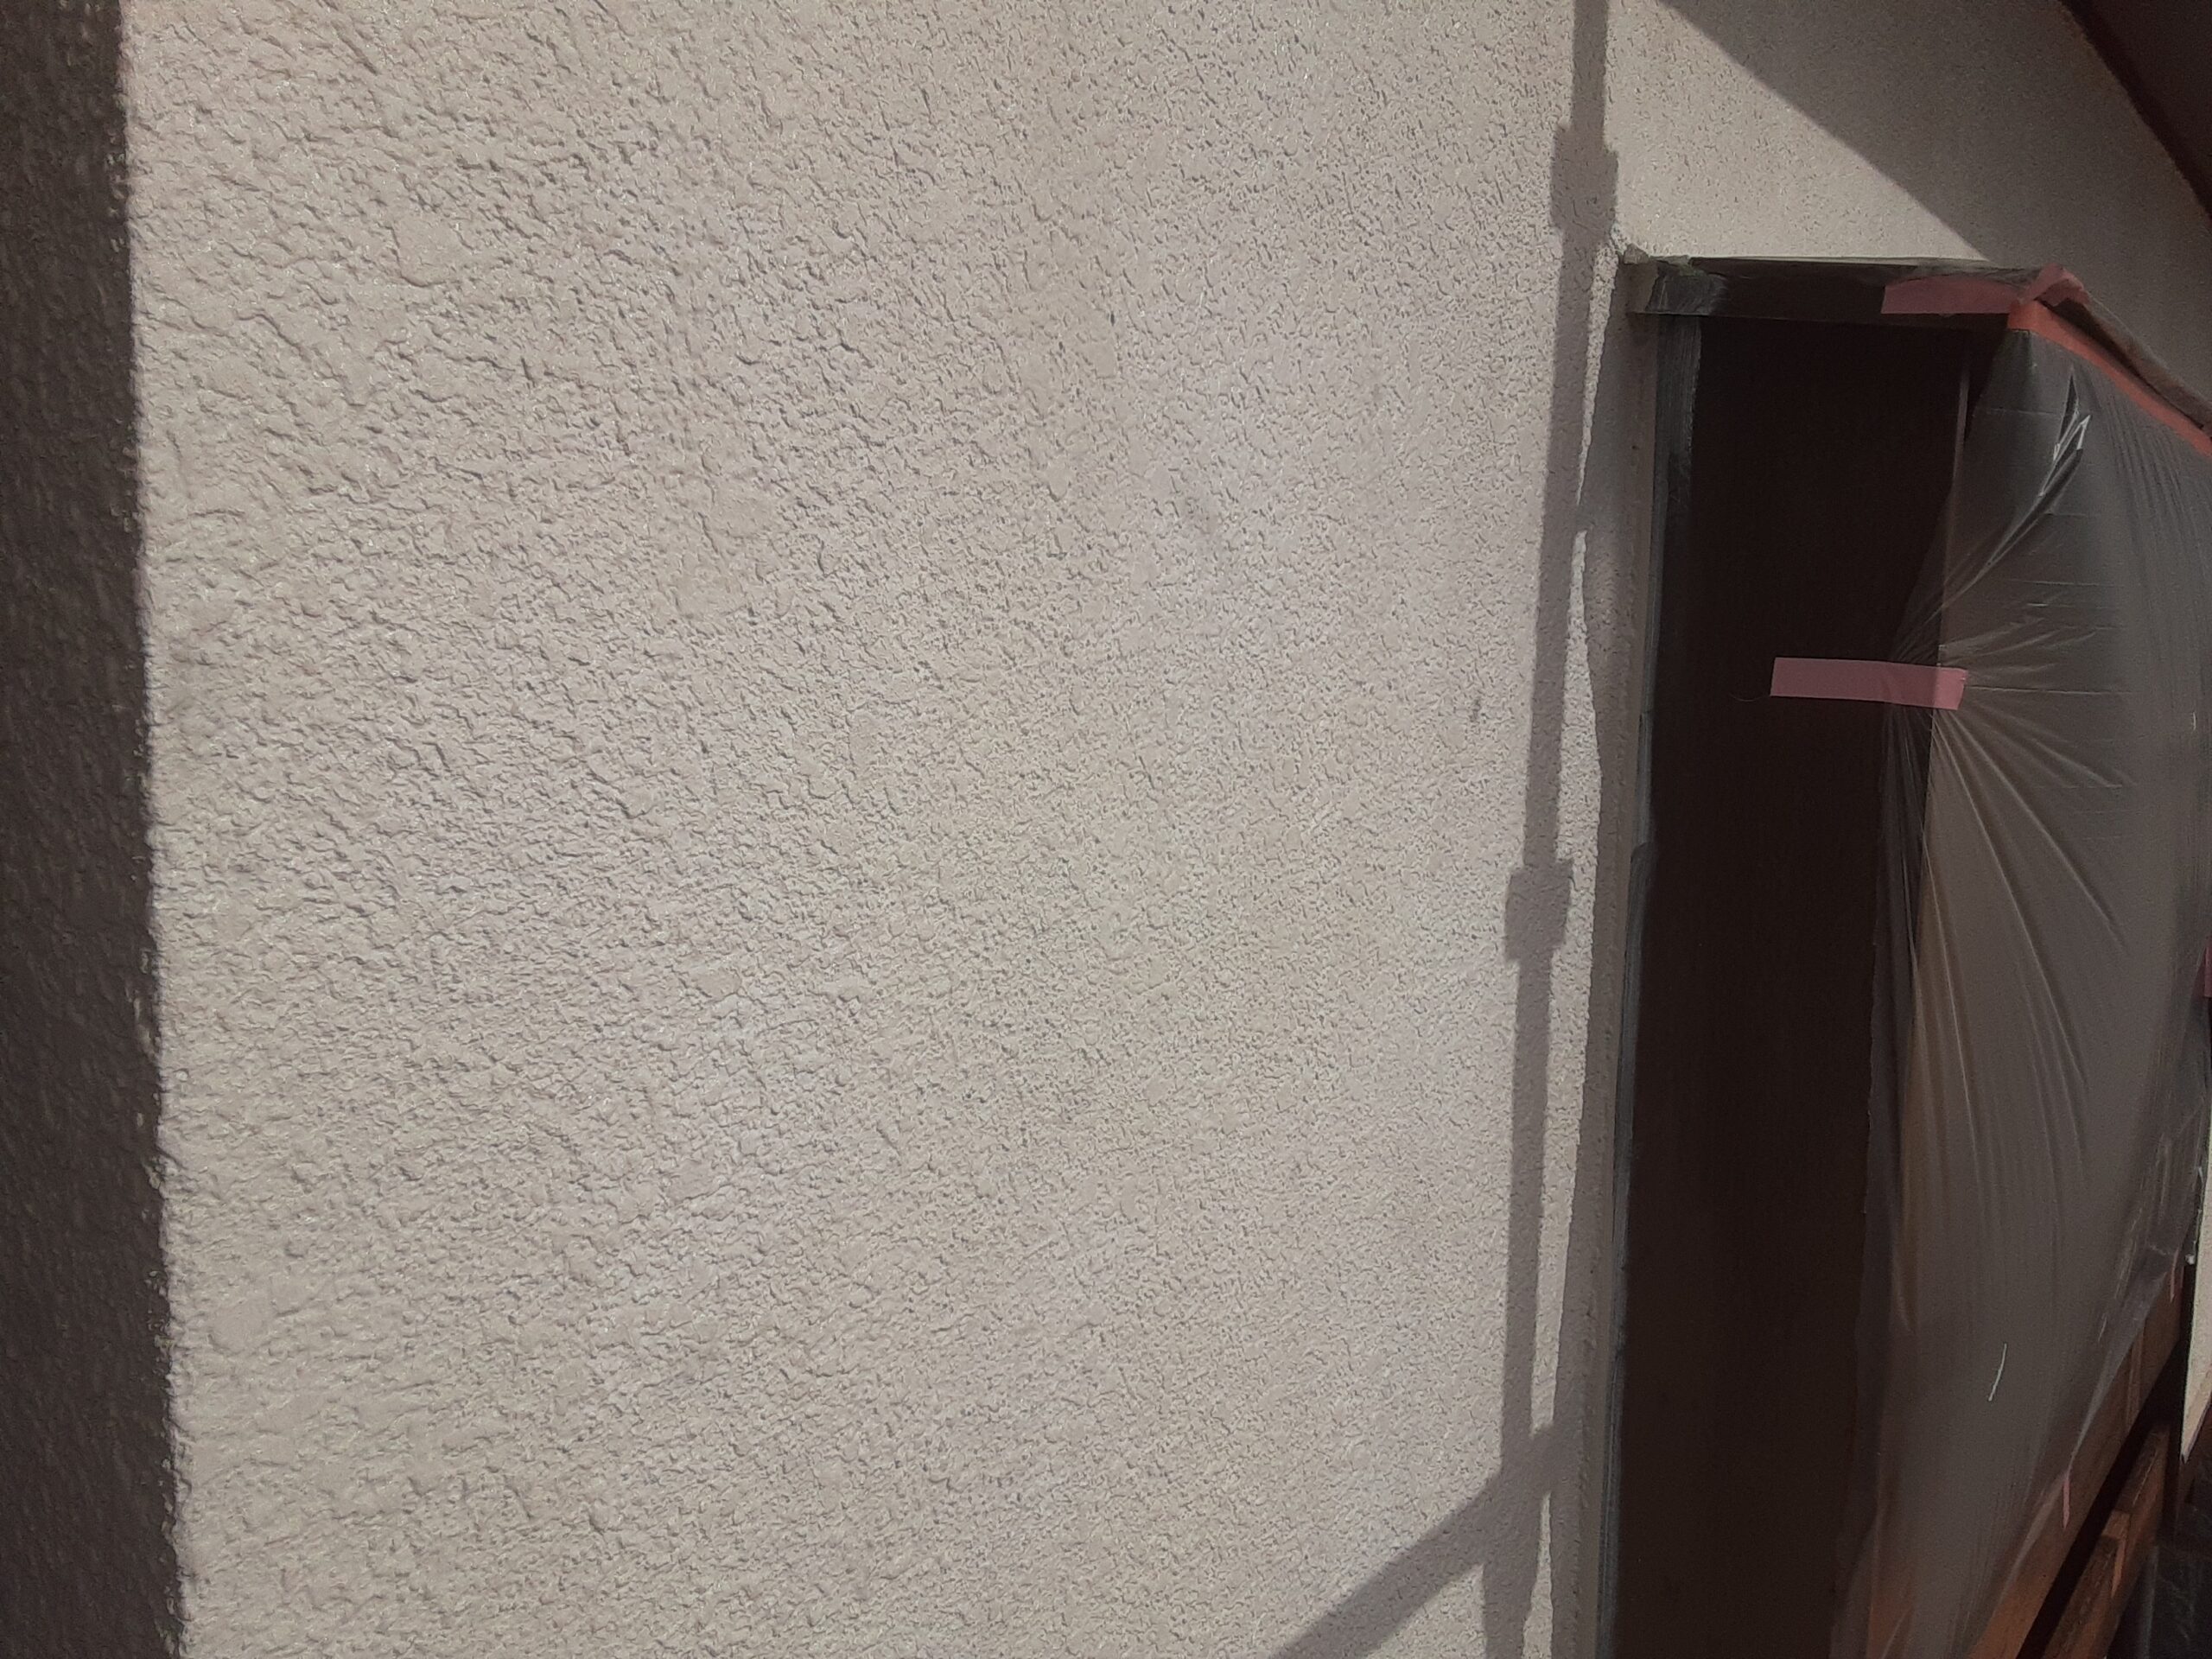 埼玉県さいたま市　屋根の仕上げ塗装､外壁下塗り塗装/さいたま市見沼区の(木造2階建て)S様邸にて塗り替えリホーム中